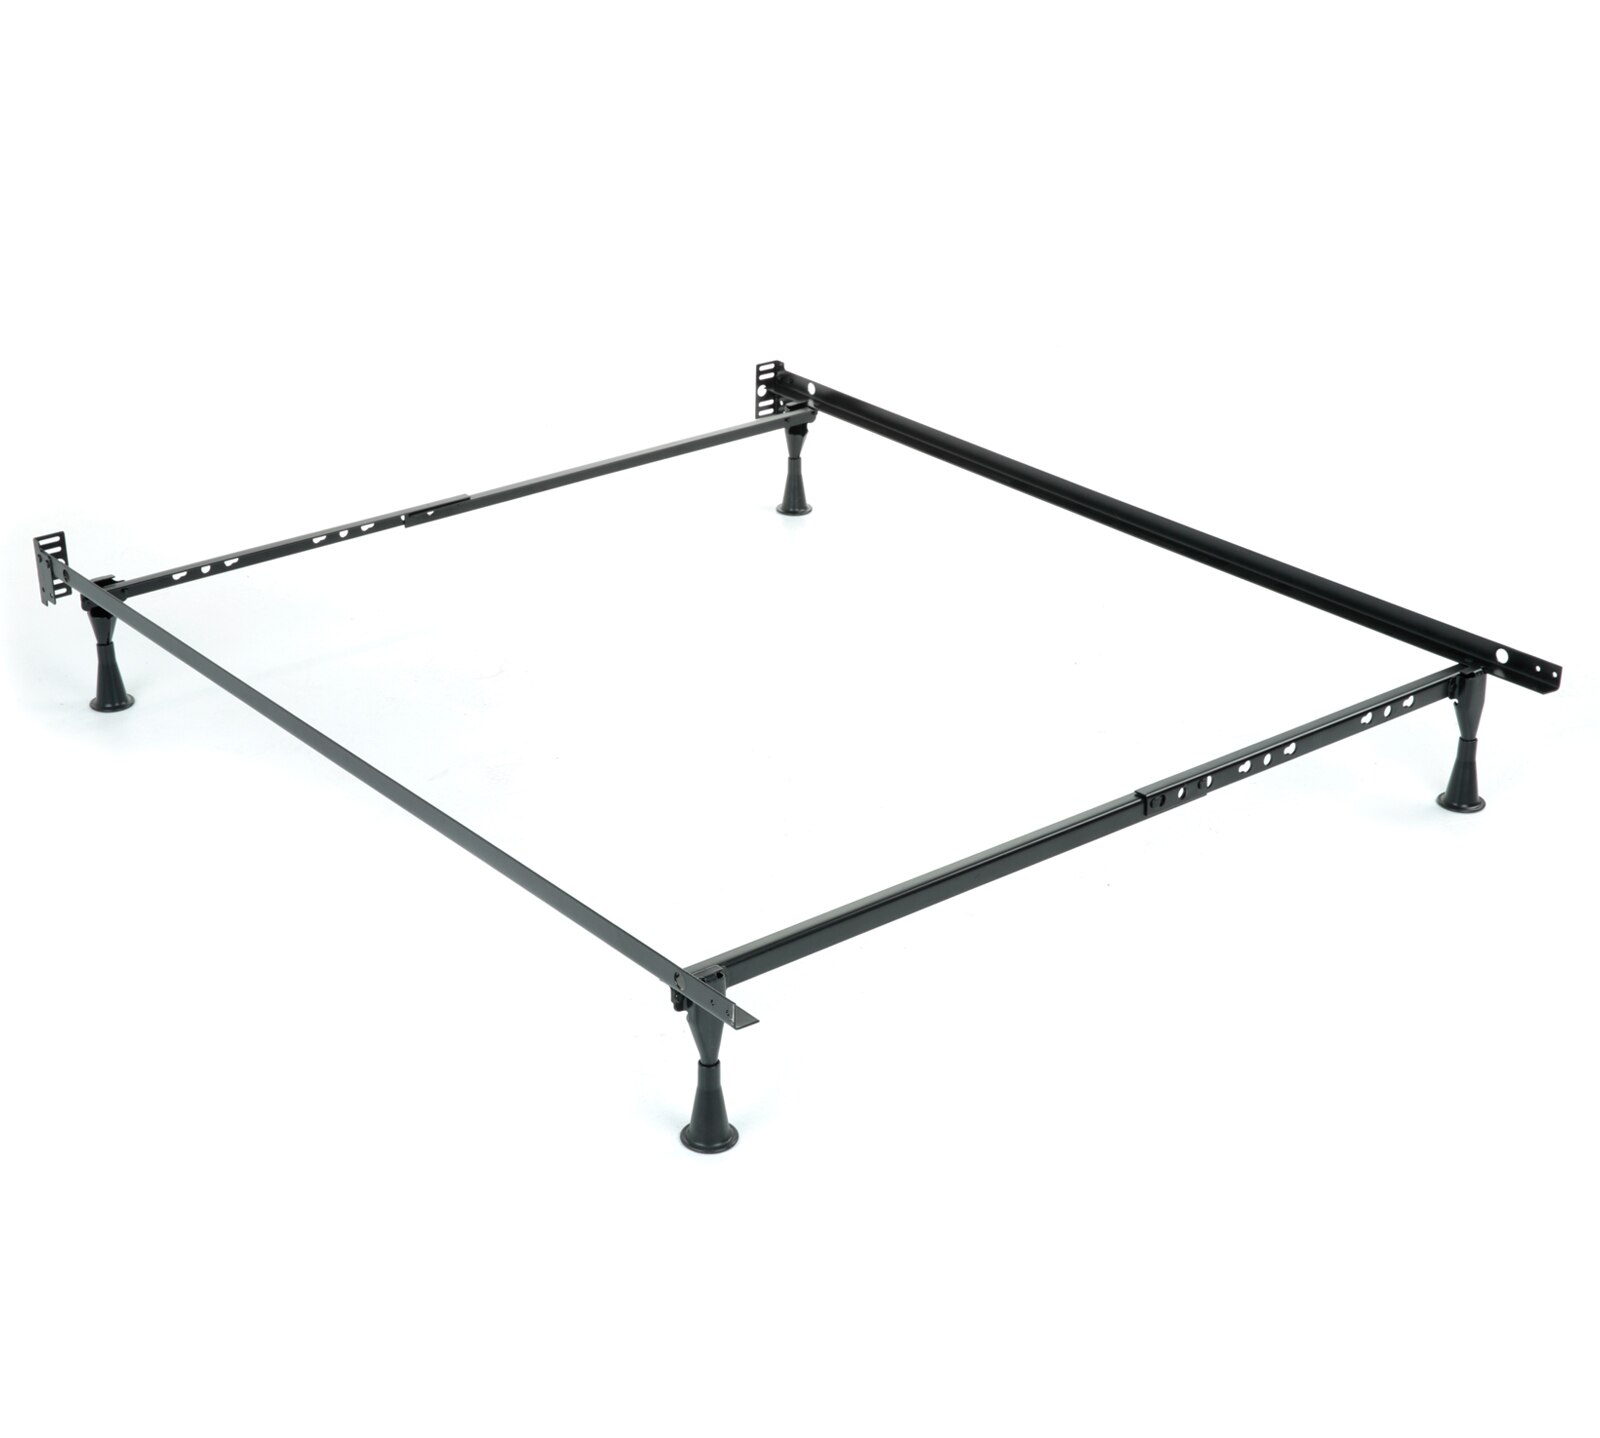 Standard Bed Frame